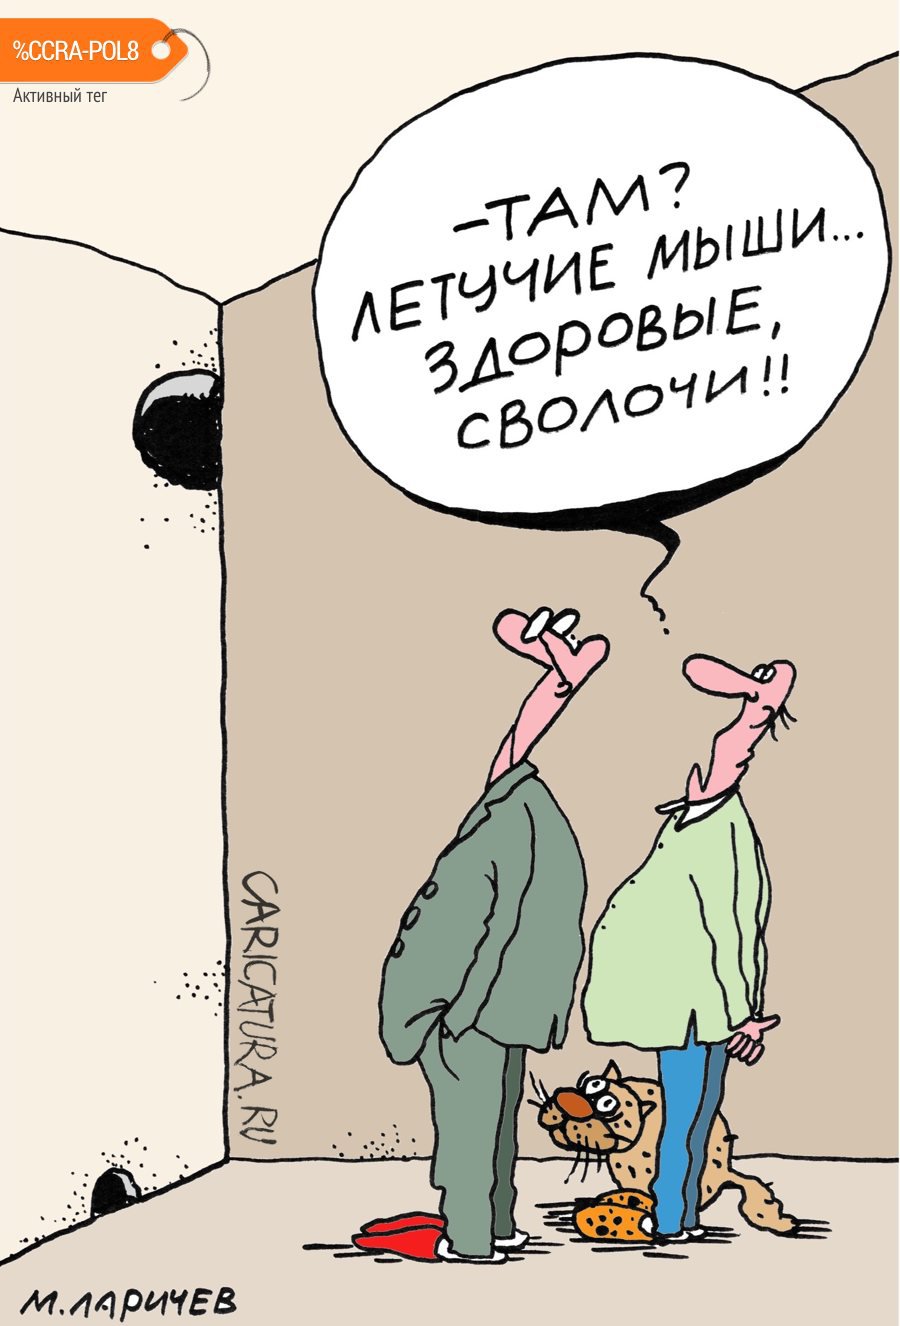 Карикатура "Всюду жизнь", Михаил Ларичев